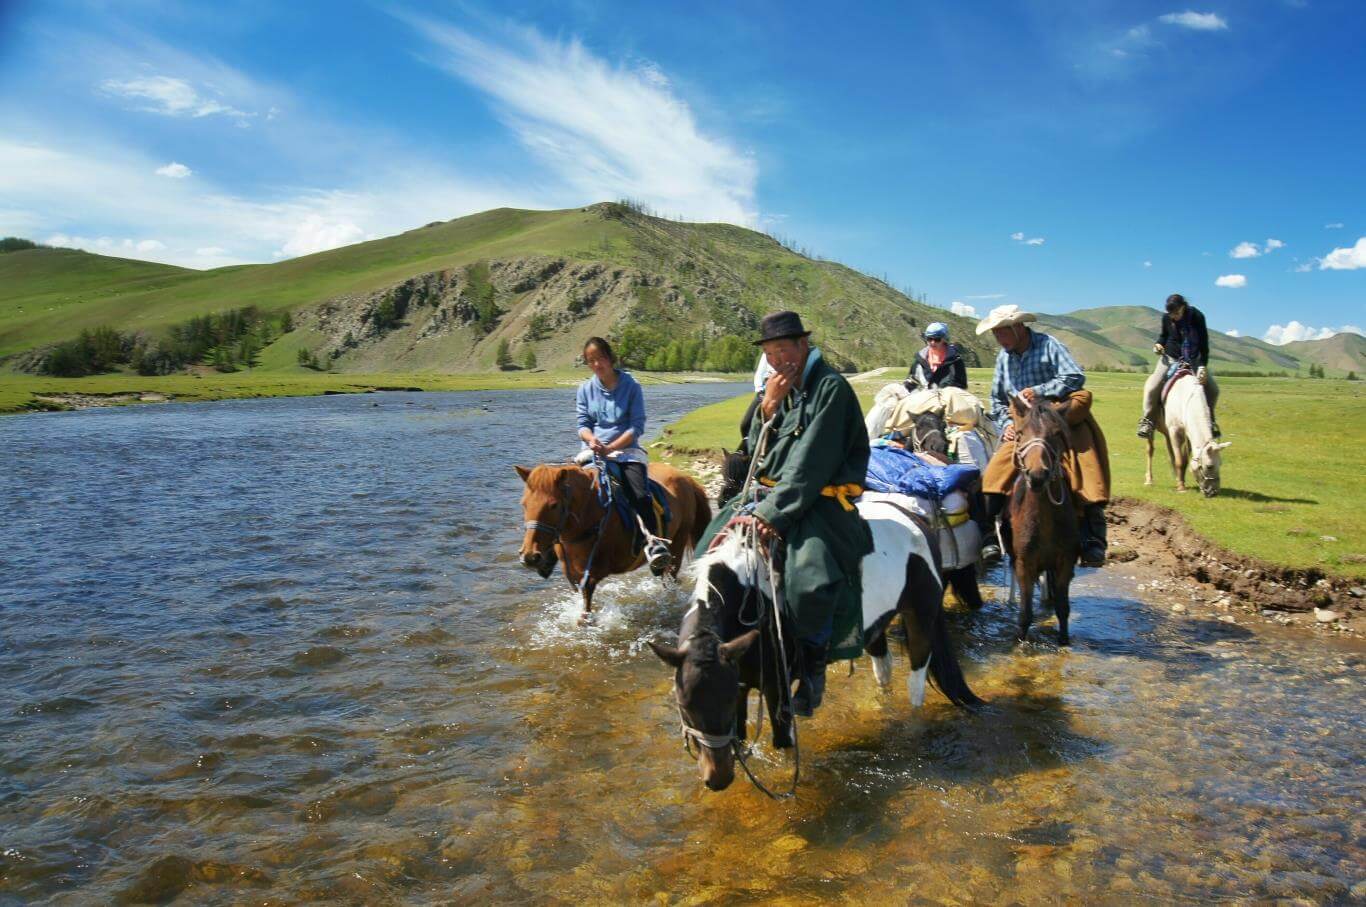 Kết quả hình ảnh cho kinh nghiệm du lịch mongolia